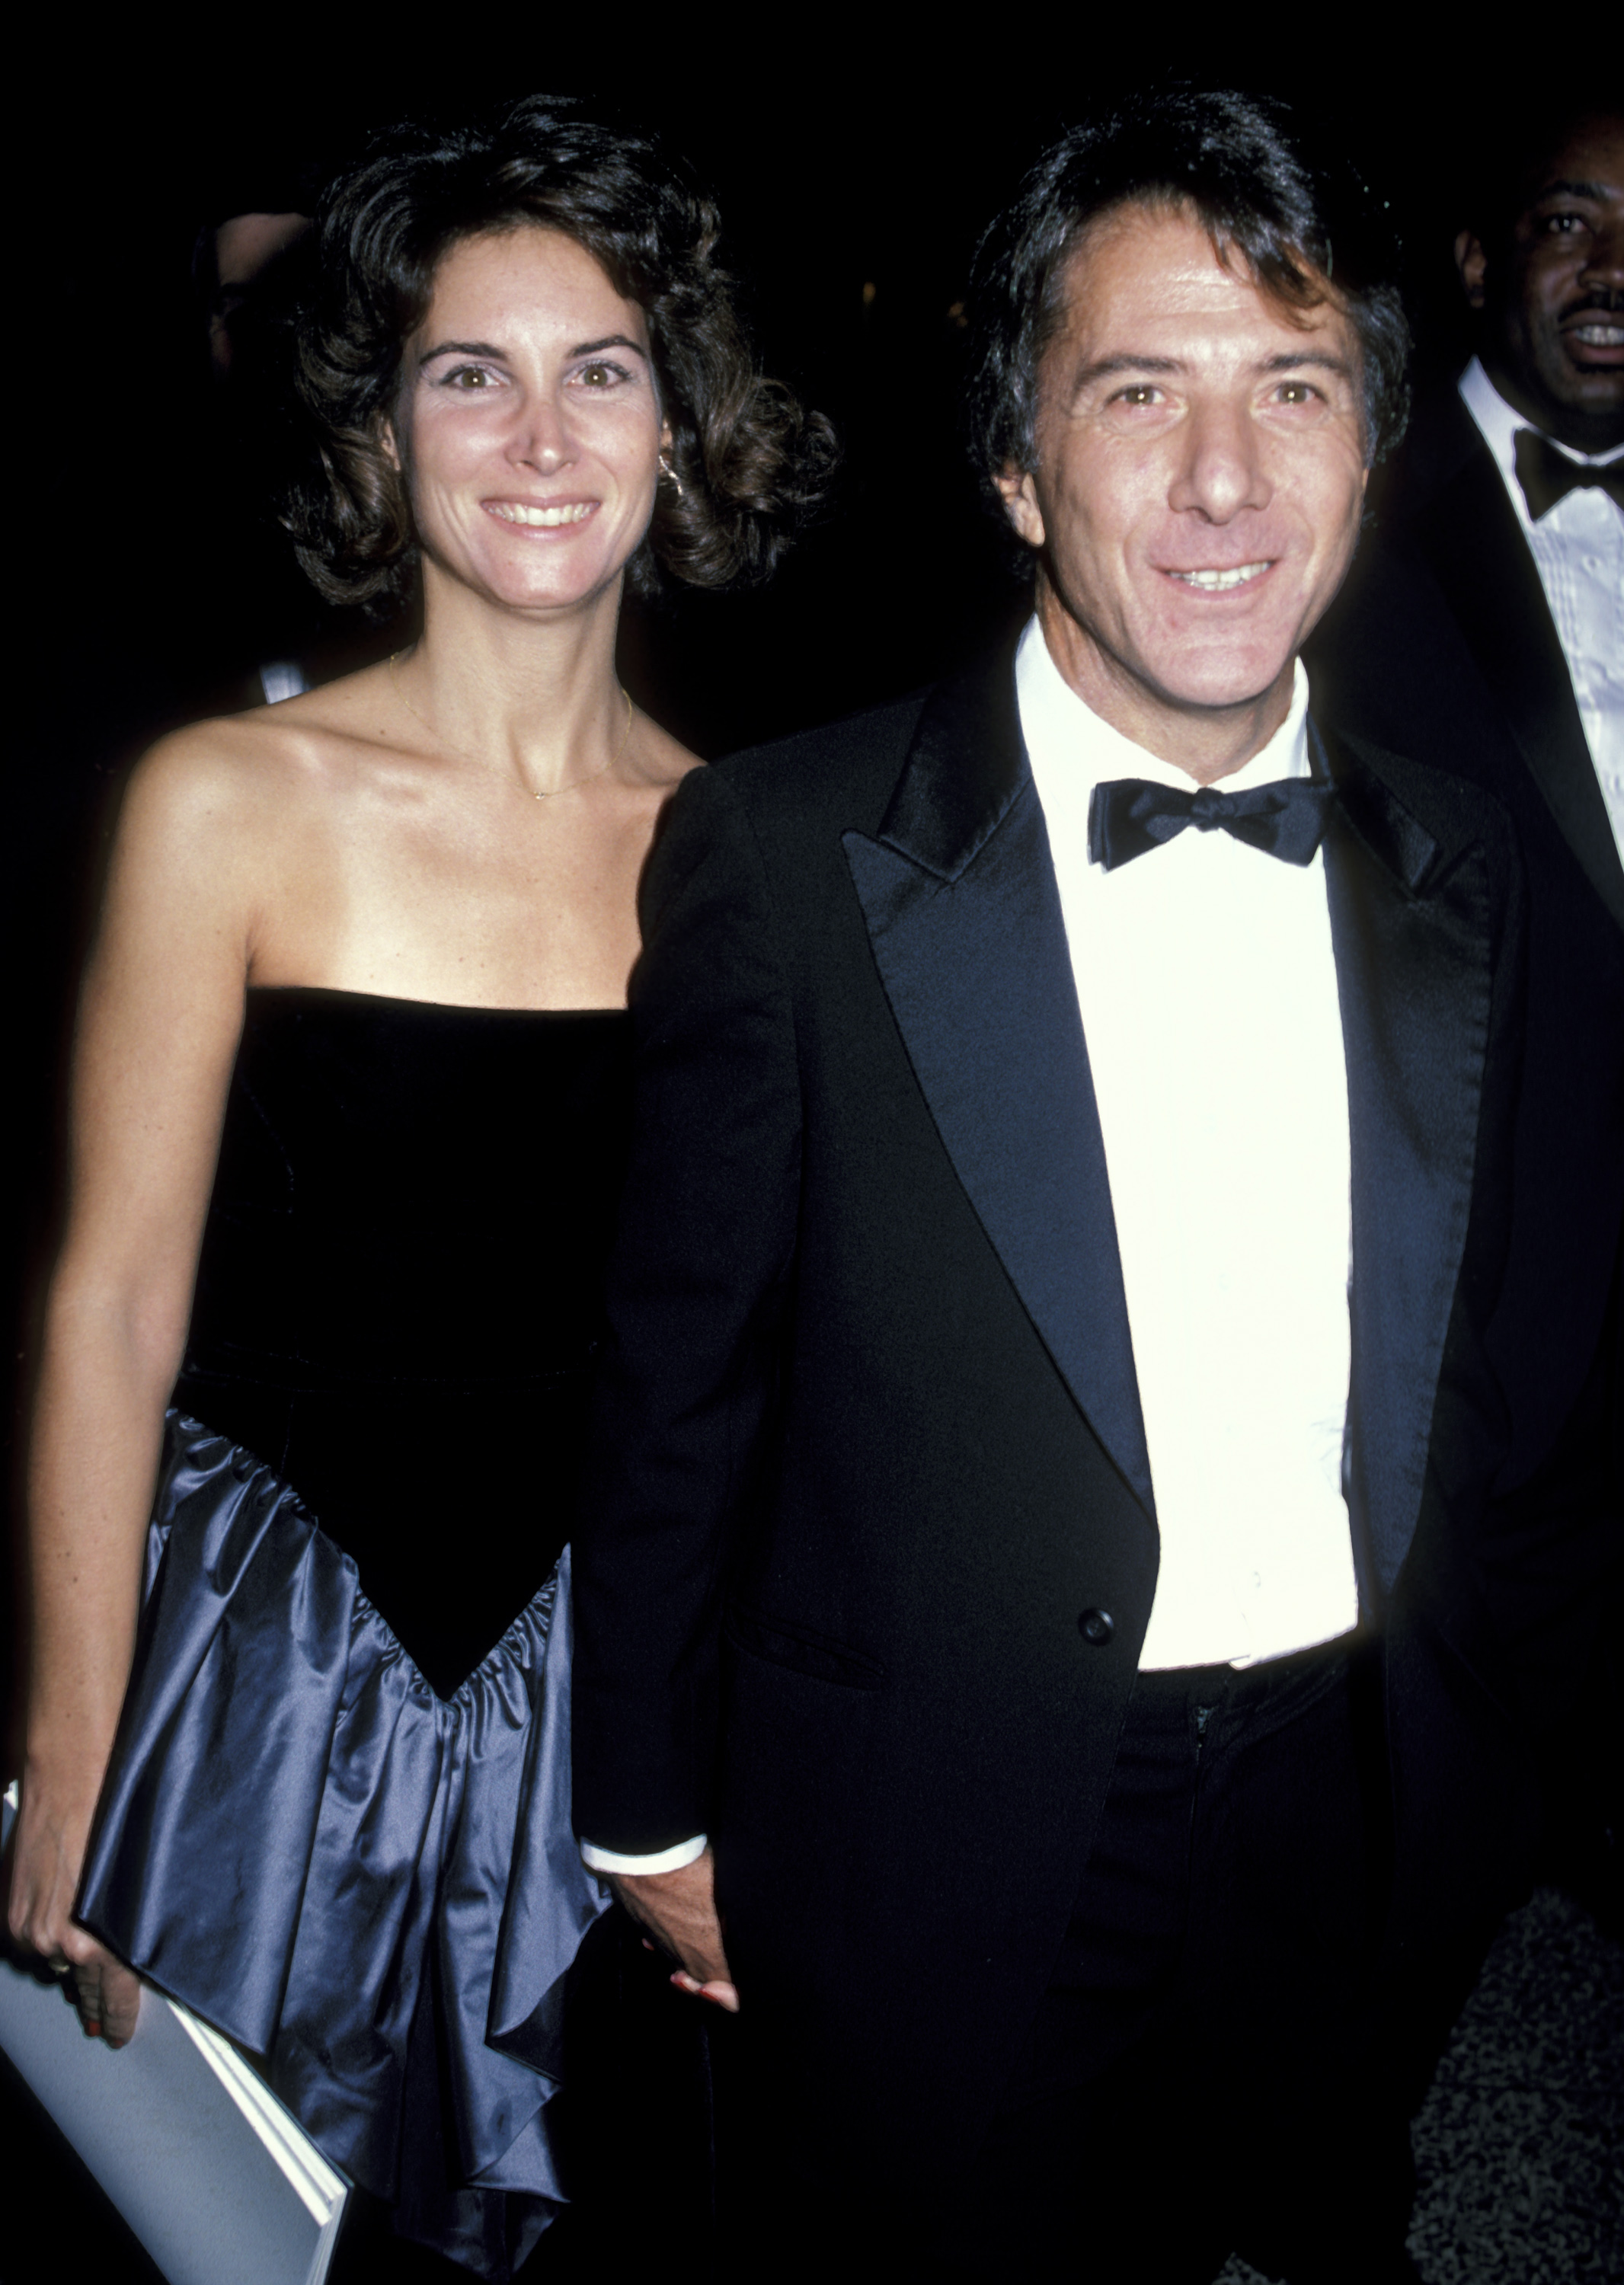 La mujer y el actor durante el estreno de "The Mission" - fiesta posterior en Nueva York el 30 de octubre de 1986. | Foto: Getty Images